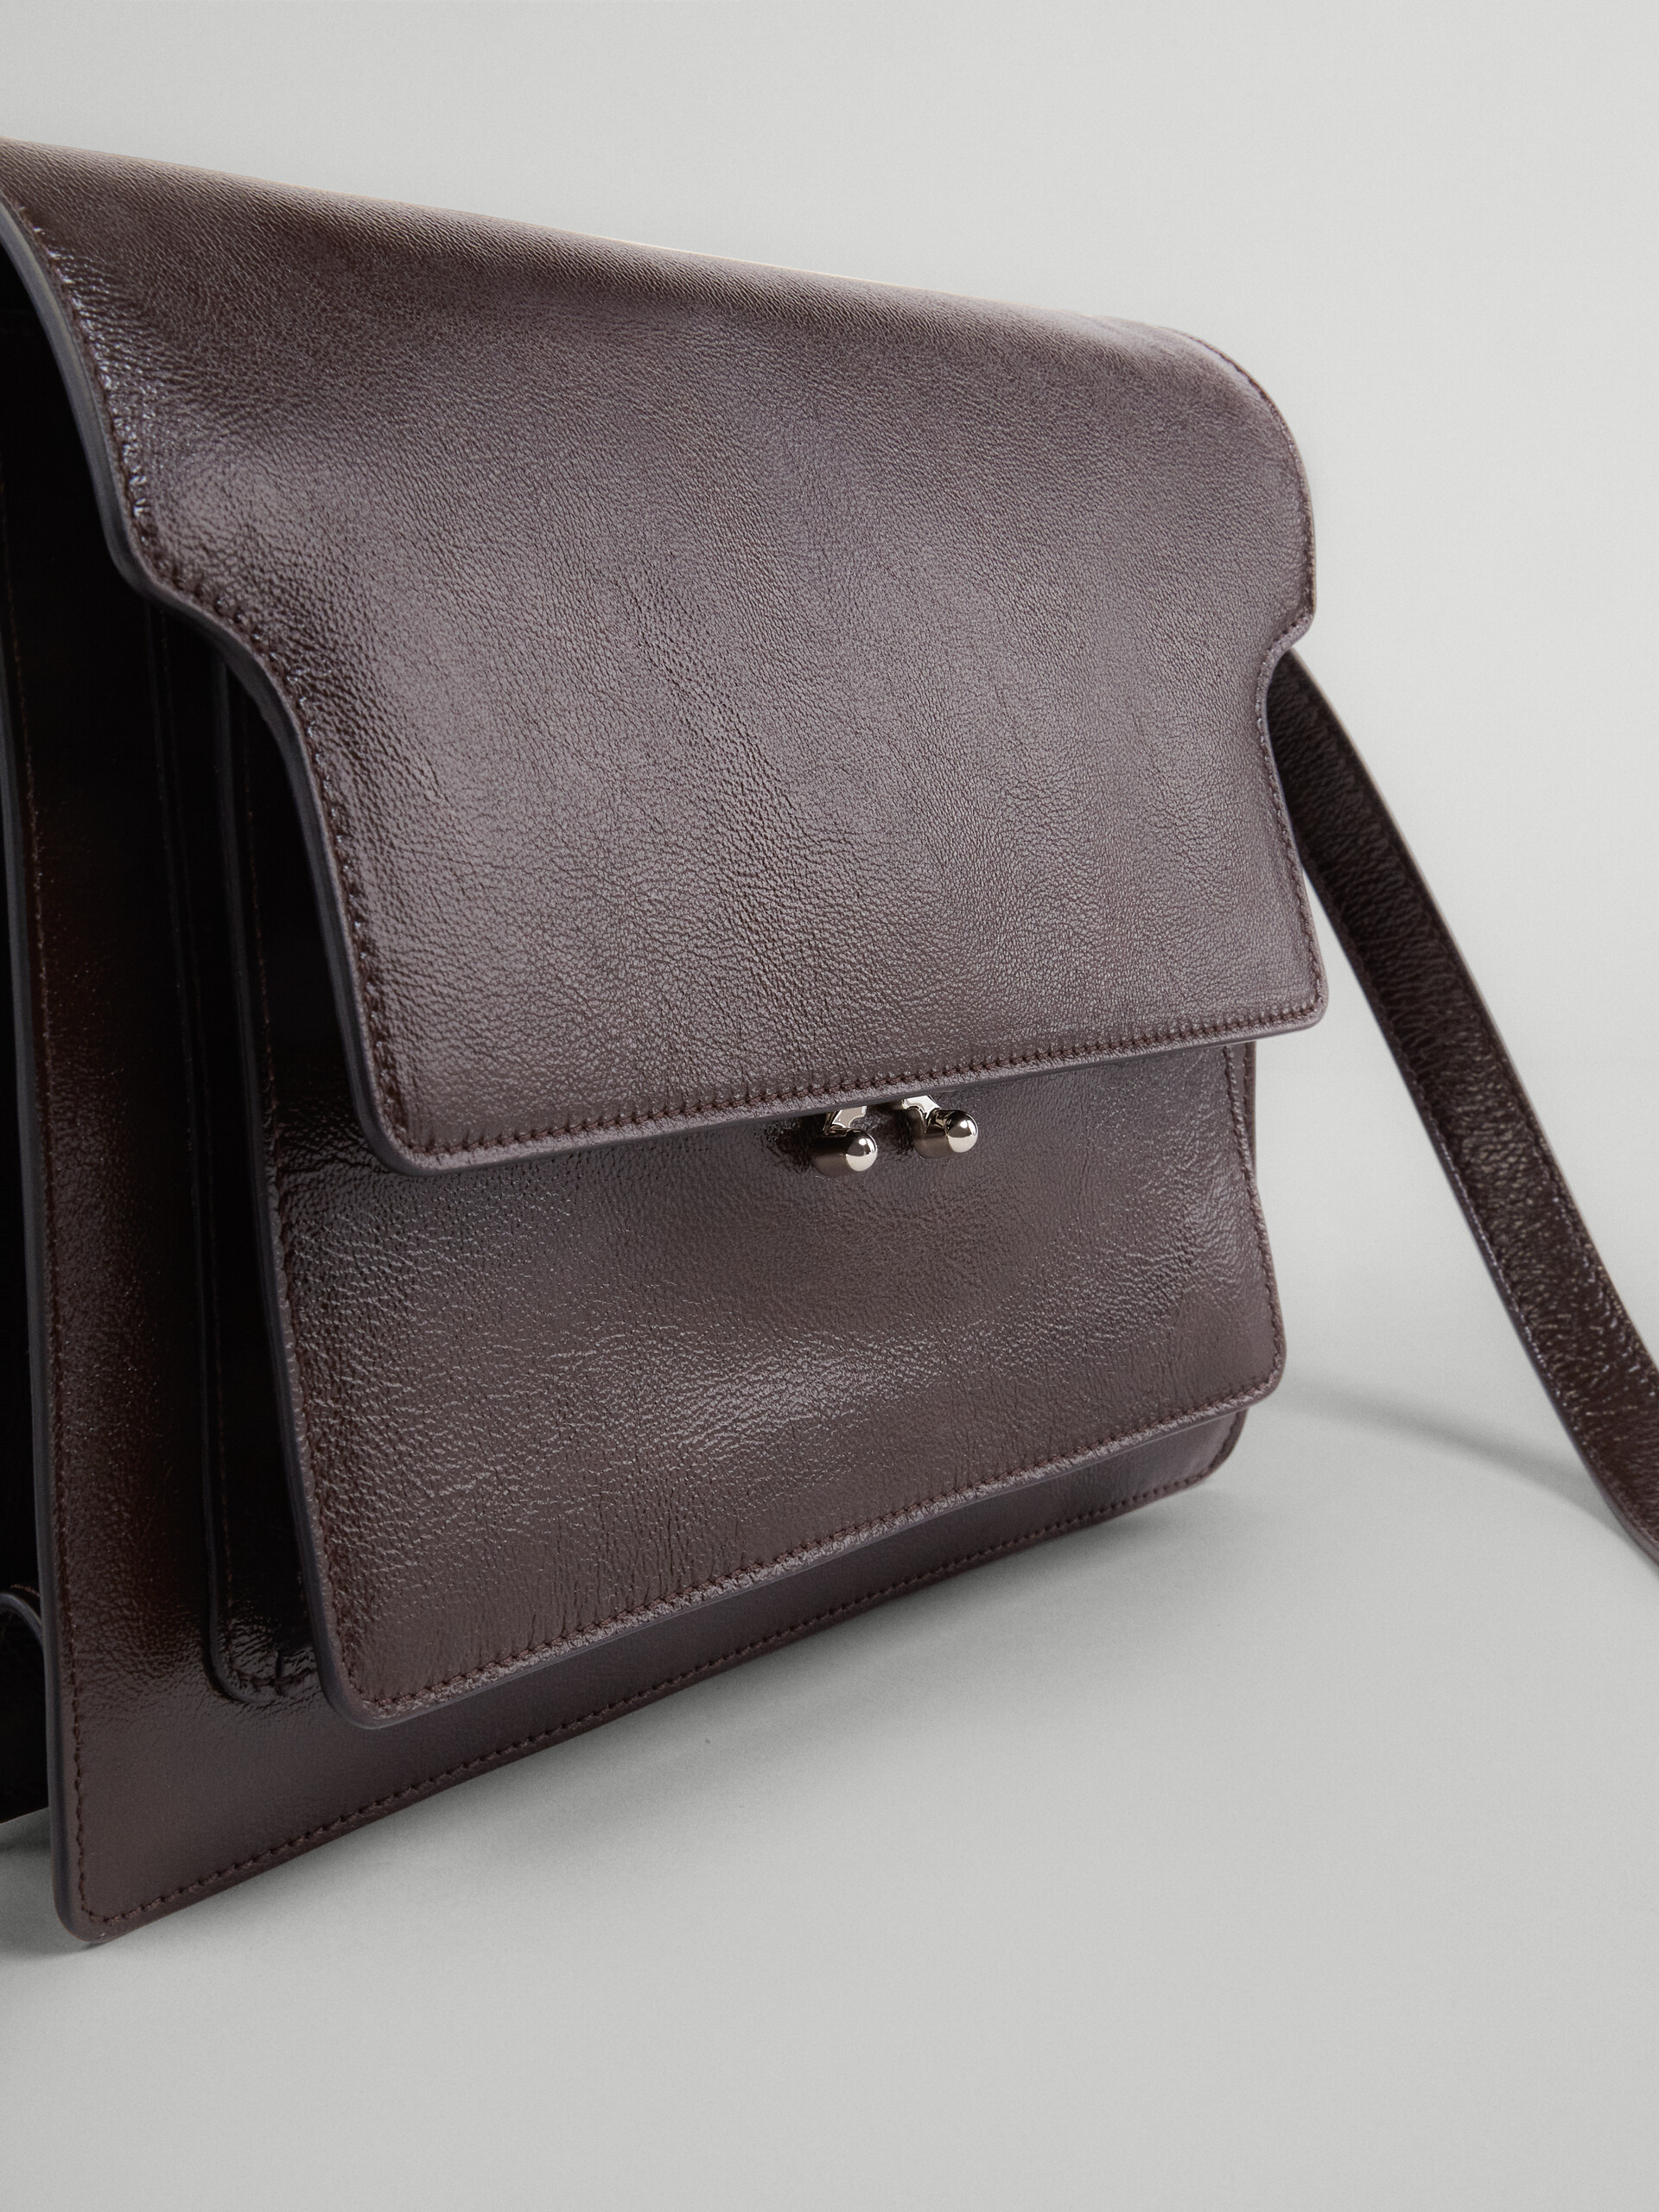 Trunk Soft Bag Grande in pelle nera - Borse a spalla - Image 3